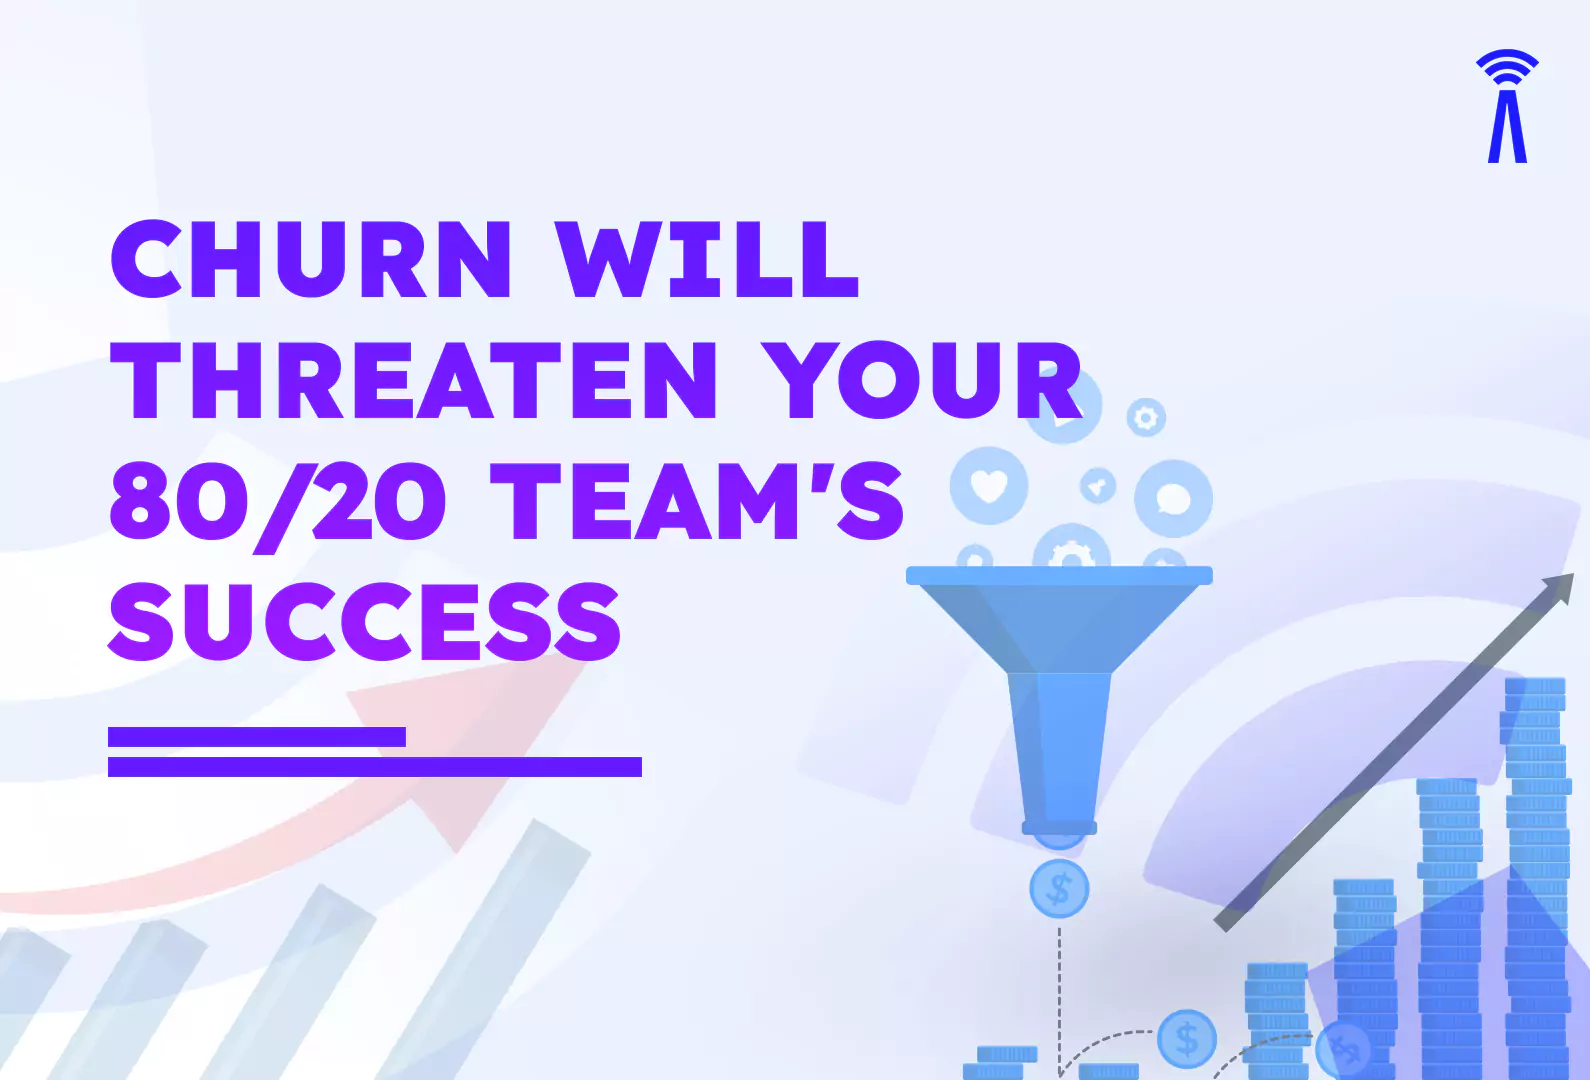 Churn Will Threaten 80/20 Team's Success